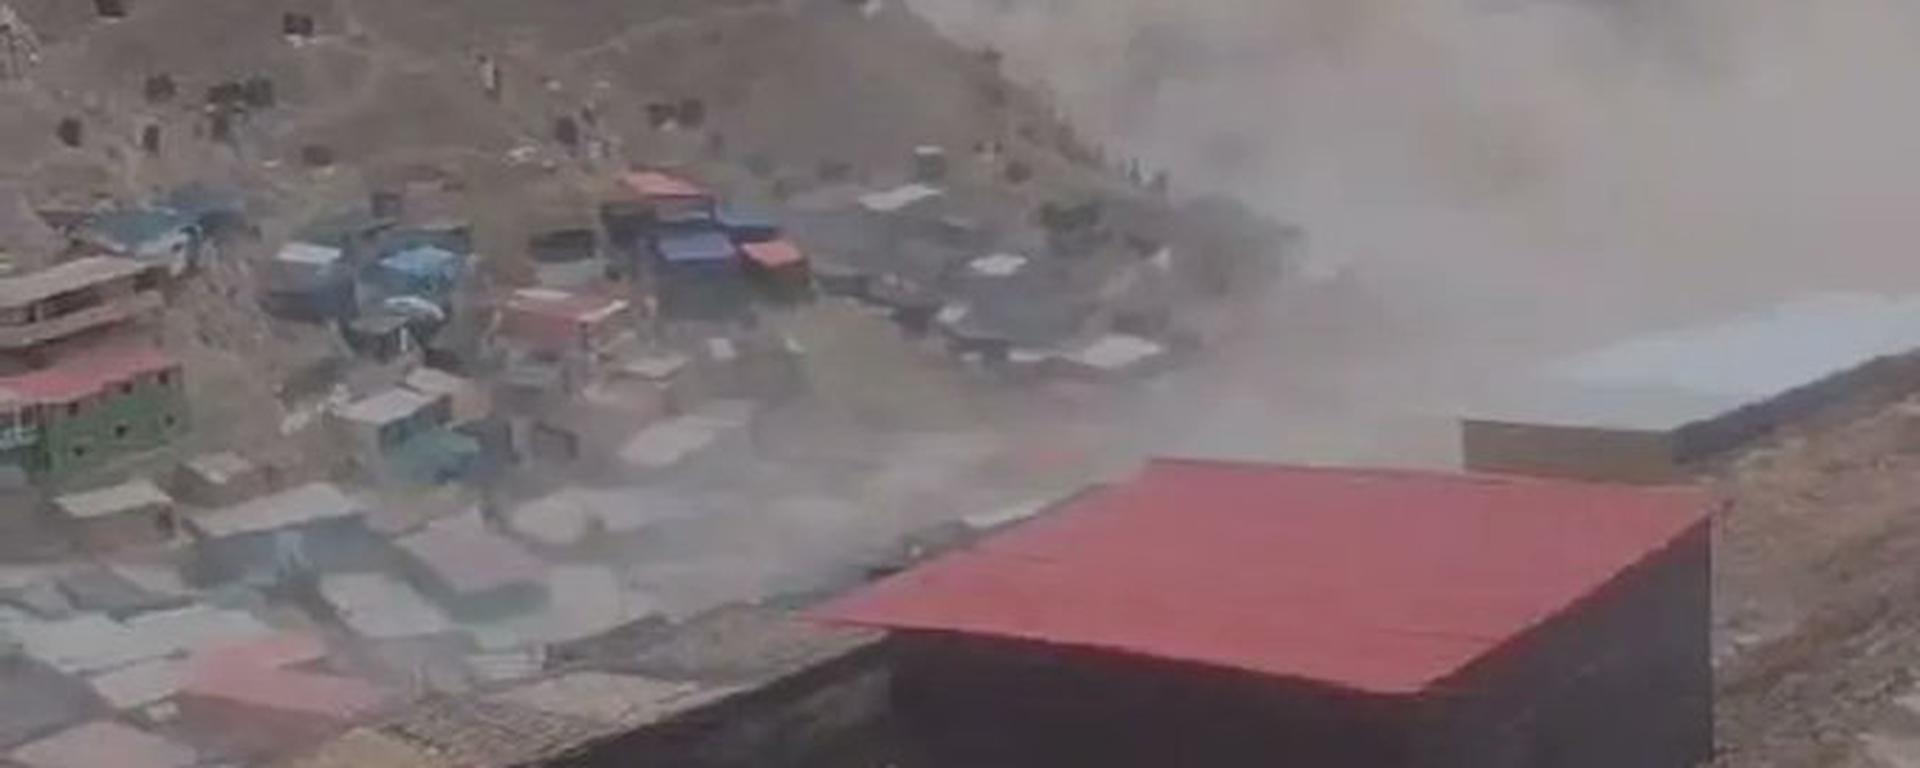 Explosión dentro de mina en Arequipa deja 19 personas heridas: las hipótesis y la precariedad detrás del suceso que pudo acabar en tragedia